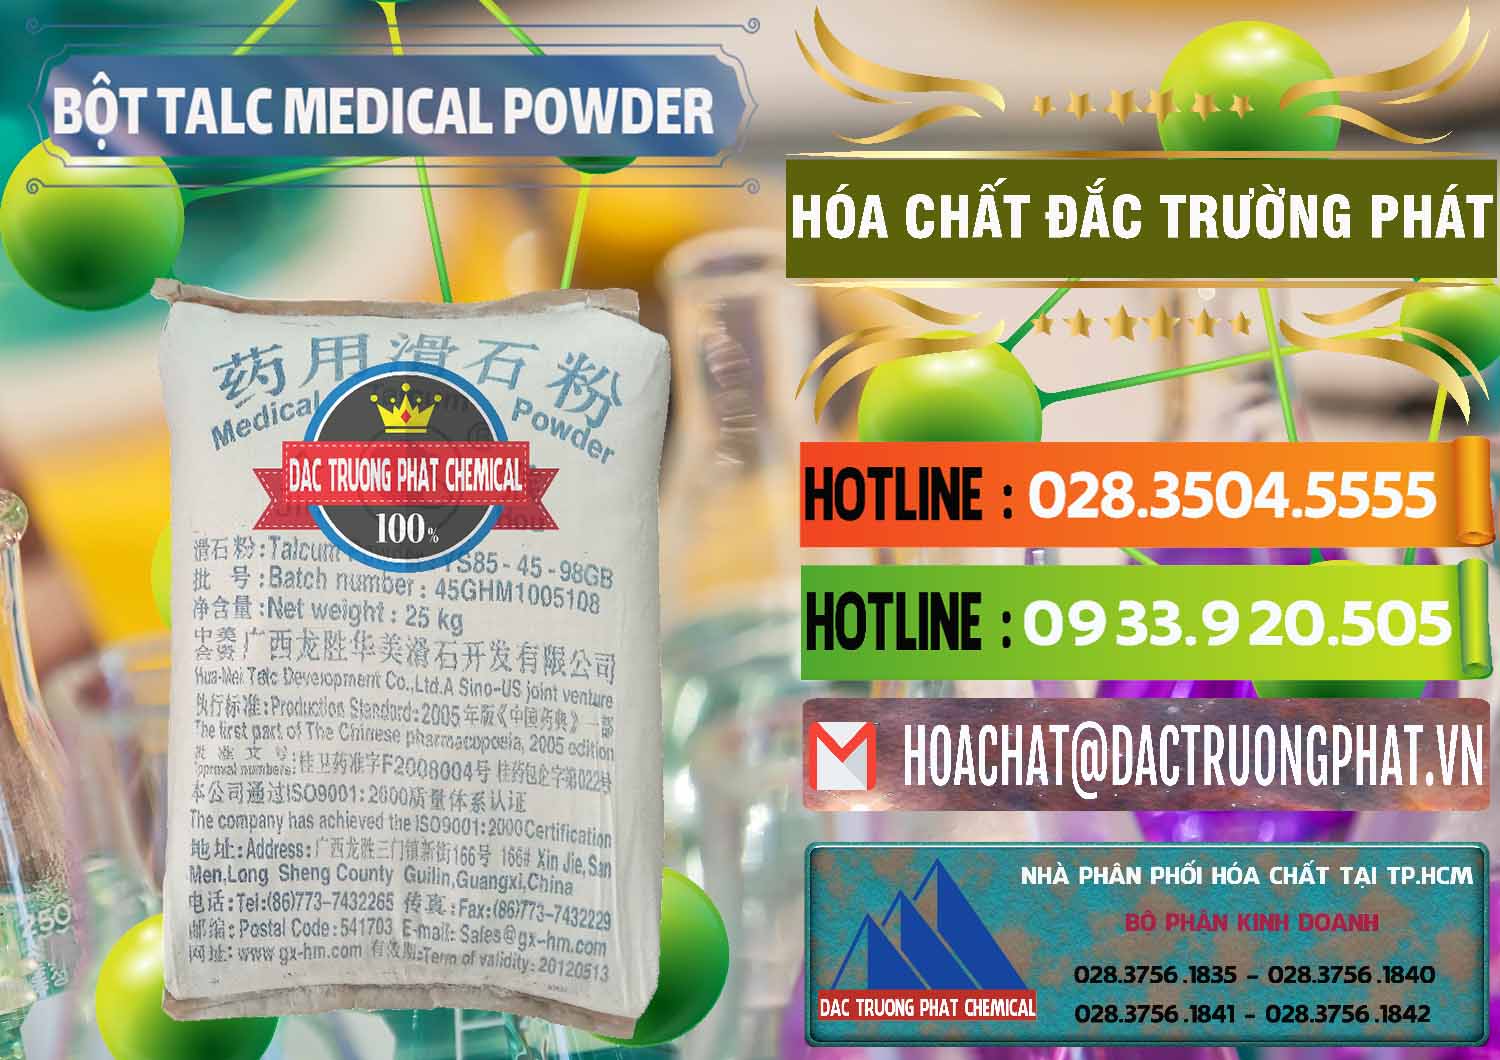 Cty chuyên phân phối ( bán ) Bột Talc Medical Powder Trung Quốc China - 0036 - Công ty cung cấp _ kinh doanh hóa chất tại TP.HCM - cungcaphoachat.com.vn